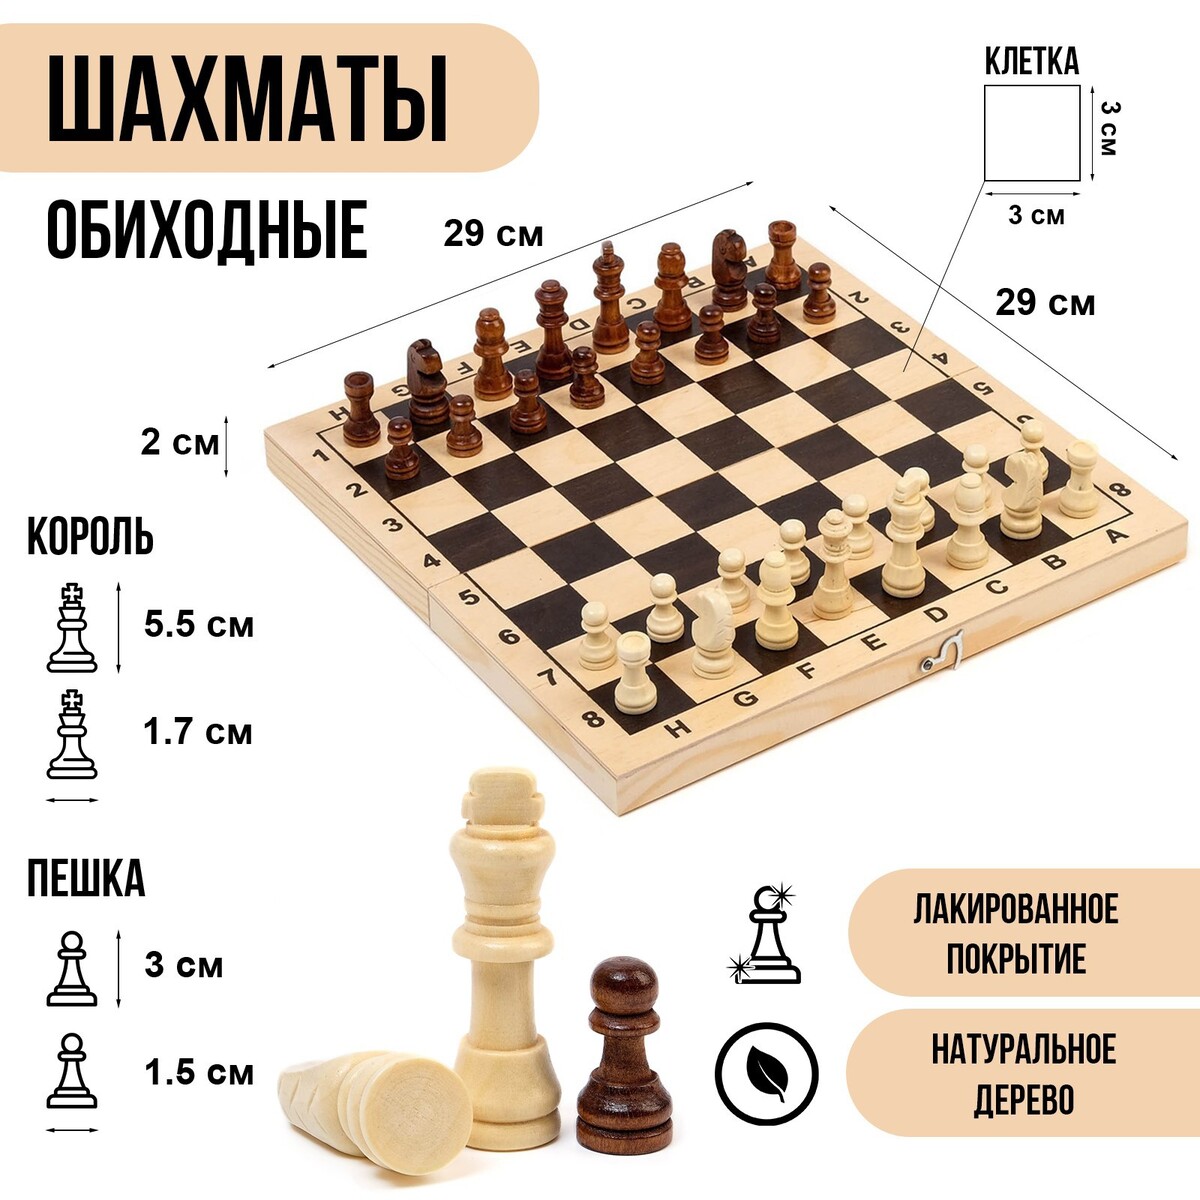 Шахматы деревянные обиходные 29 х 29 см, король h-5.5 см, пешка h-3 см титановый король